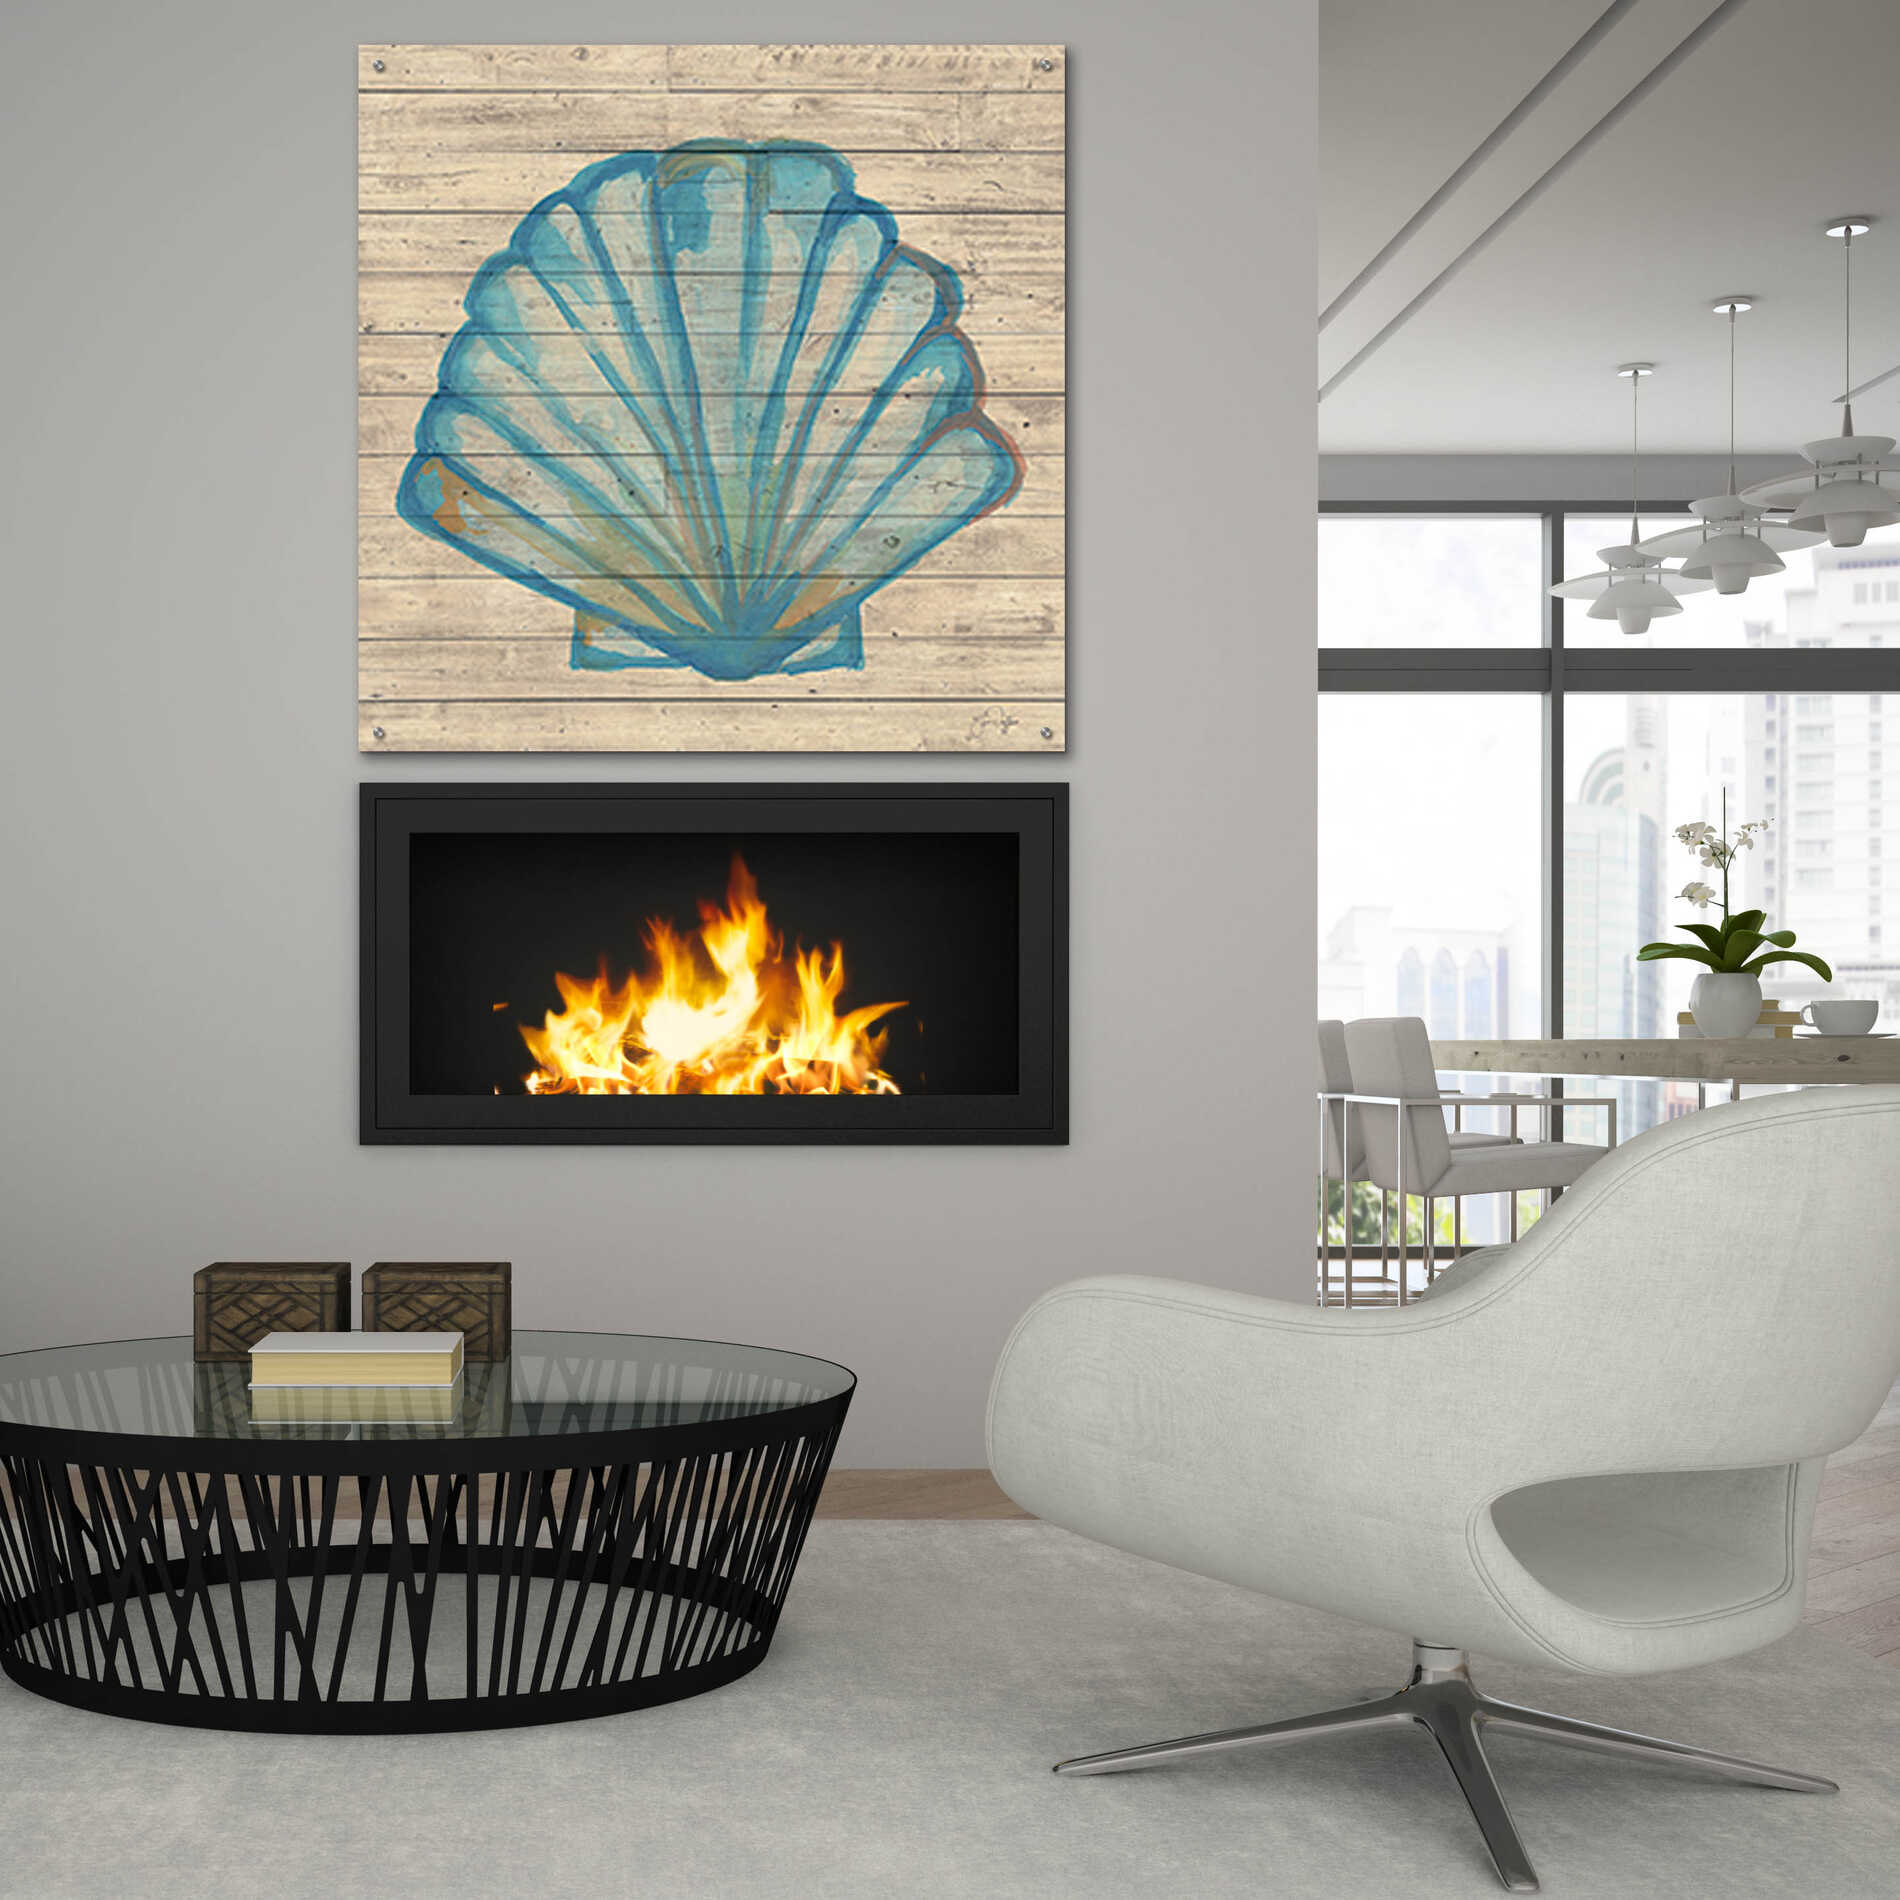 Epic Art 'A Seashell Wish' by Yass Naffas Designs, Acrylic Glass Wall Art,36x36